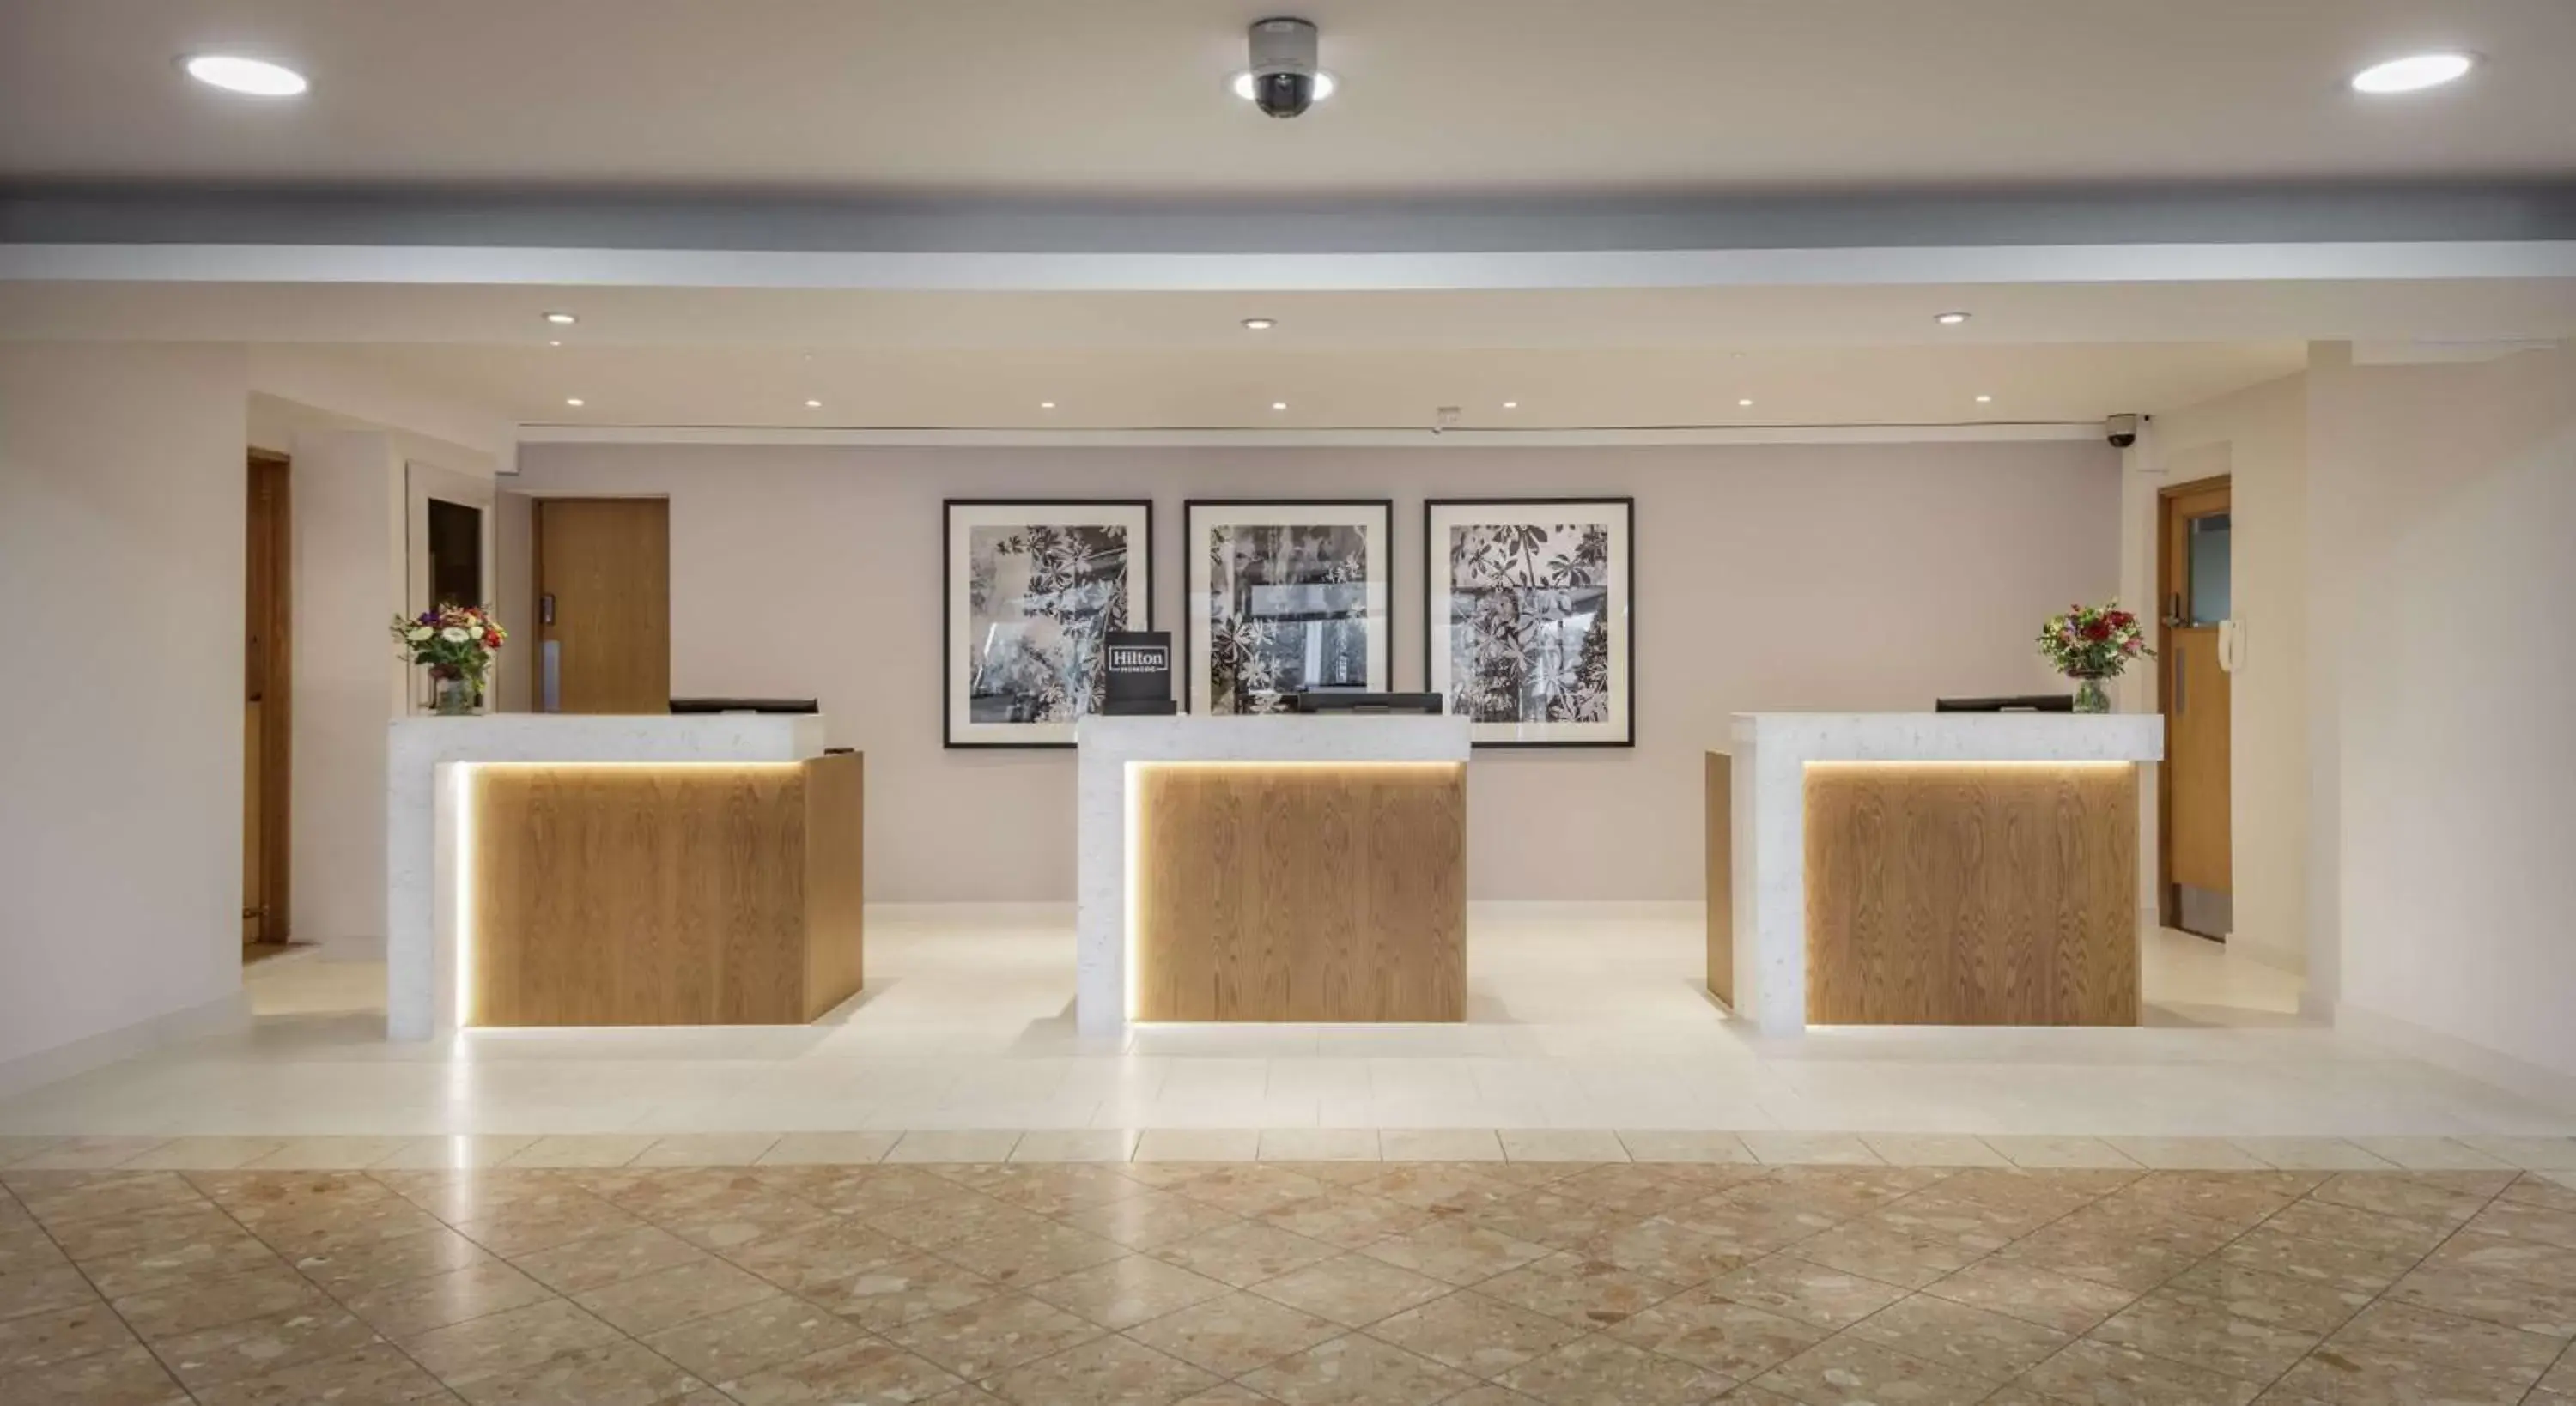 Lobby or reception, Lobby/Reception in Hilton London Watford